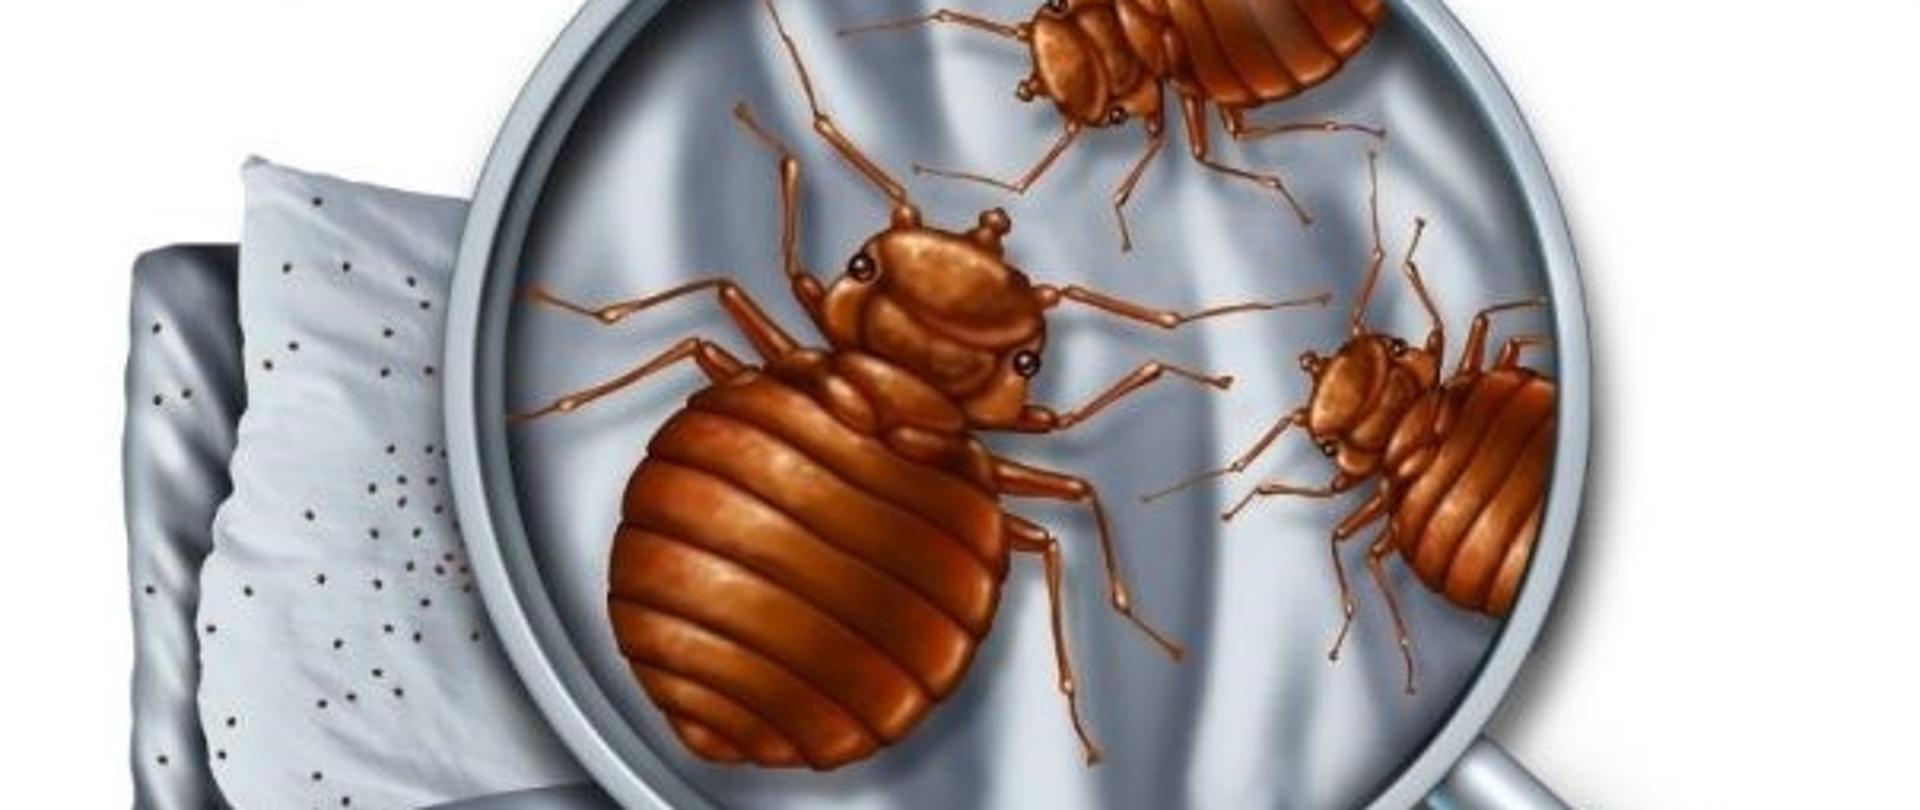 Ilustracja przedstawiająca insekty na białym przedmiocie, pod lupą.